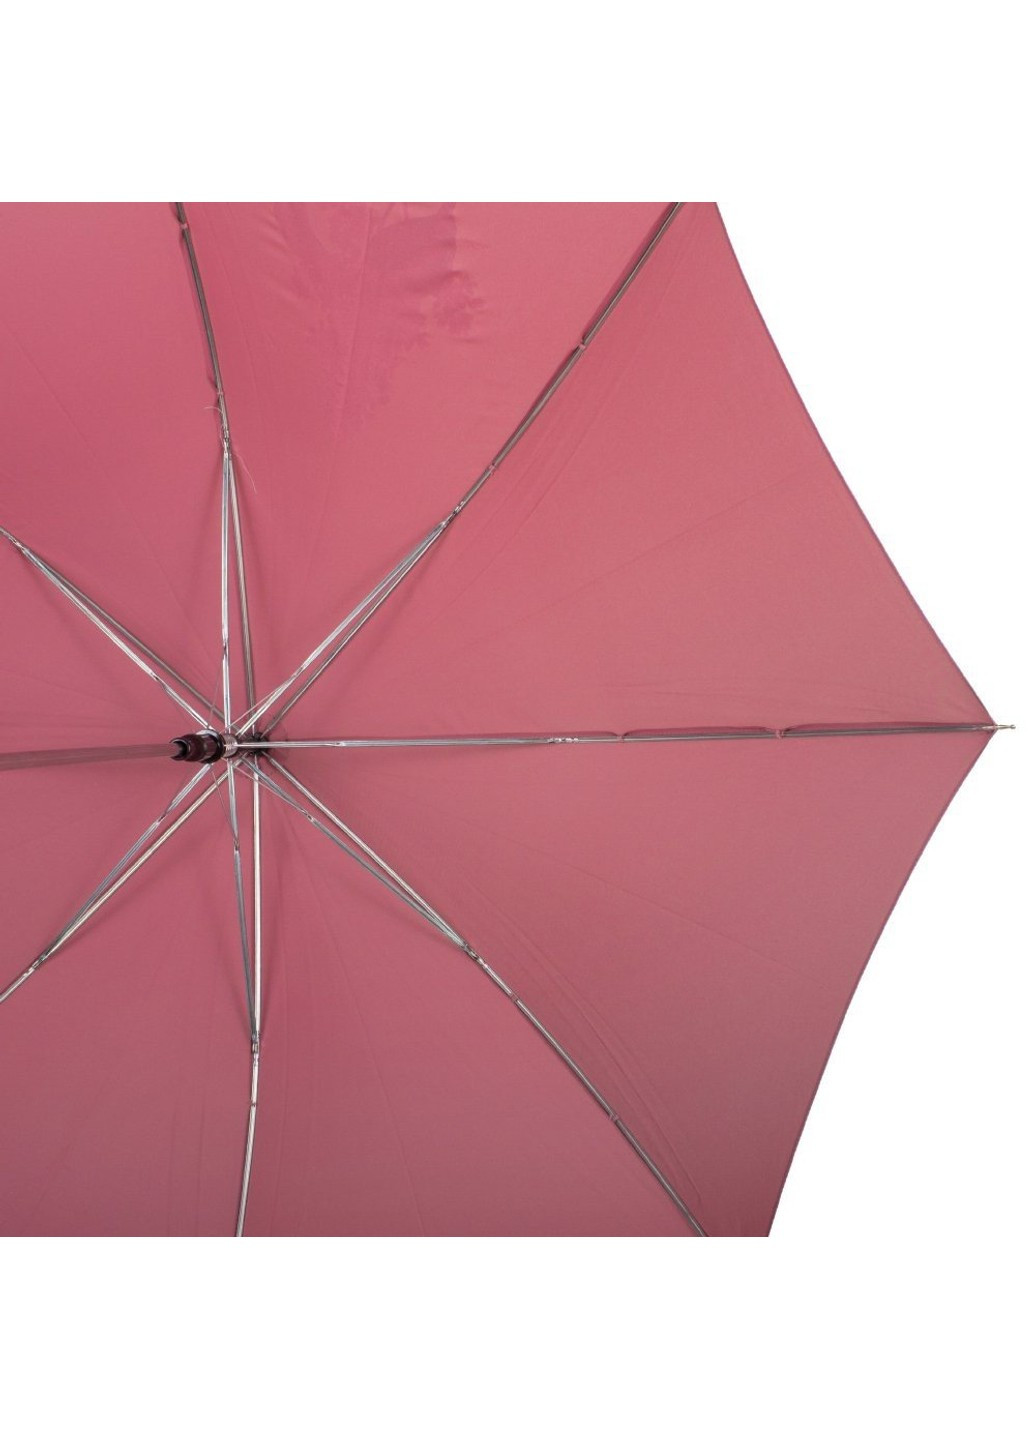 Женский нежно-розовый зонт-трость полуавтомат Airton (262975975)